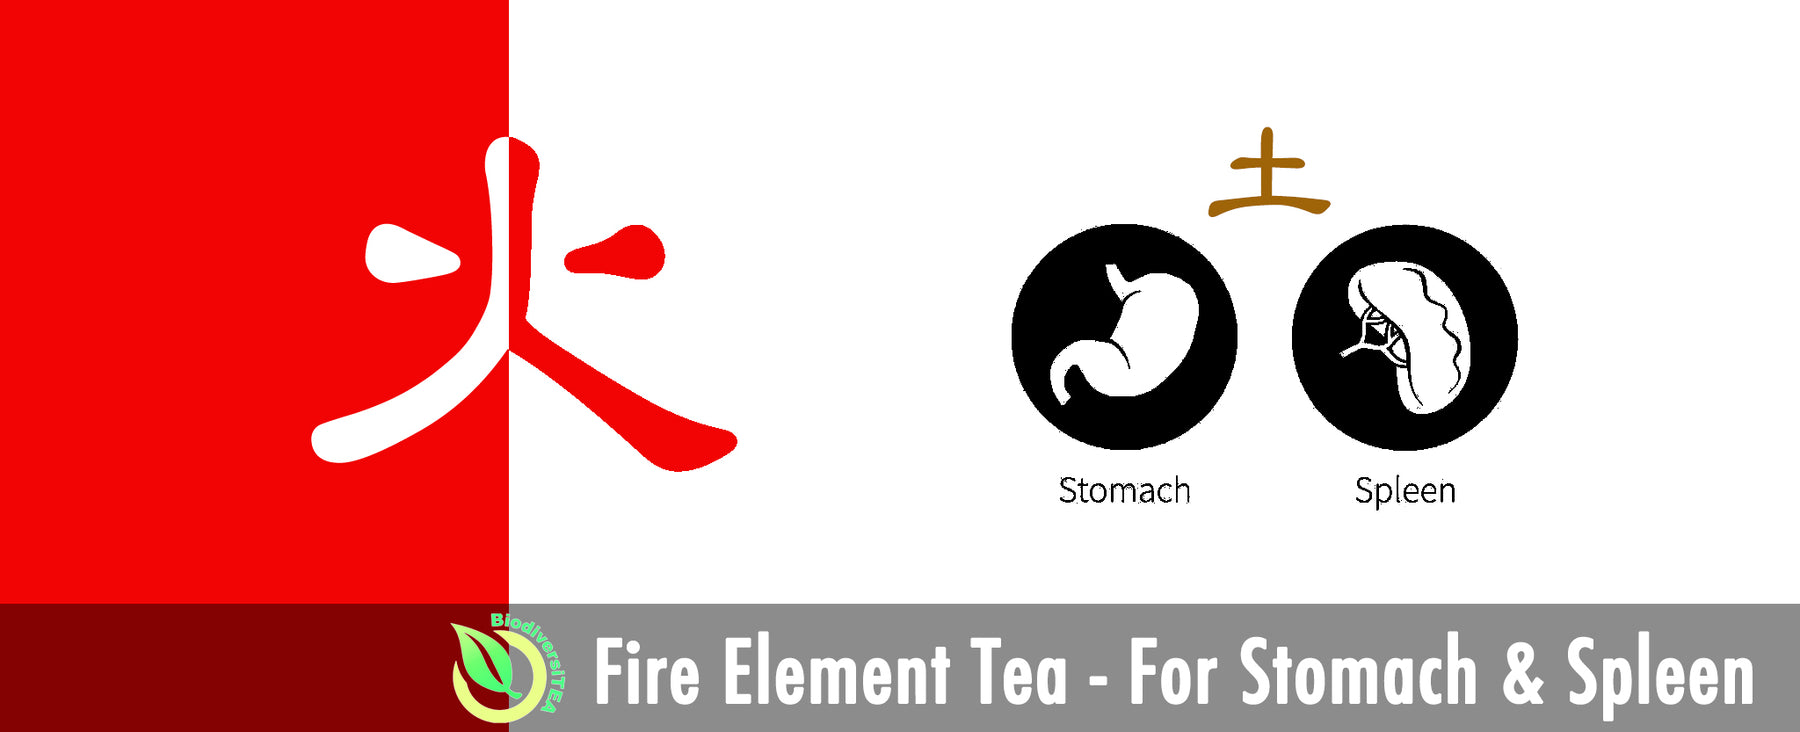 Fire Element Tea - For Stomach & Spleen